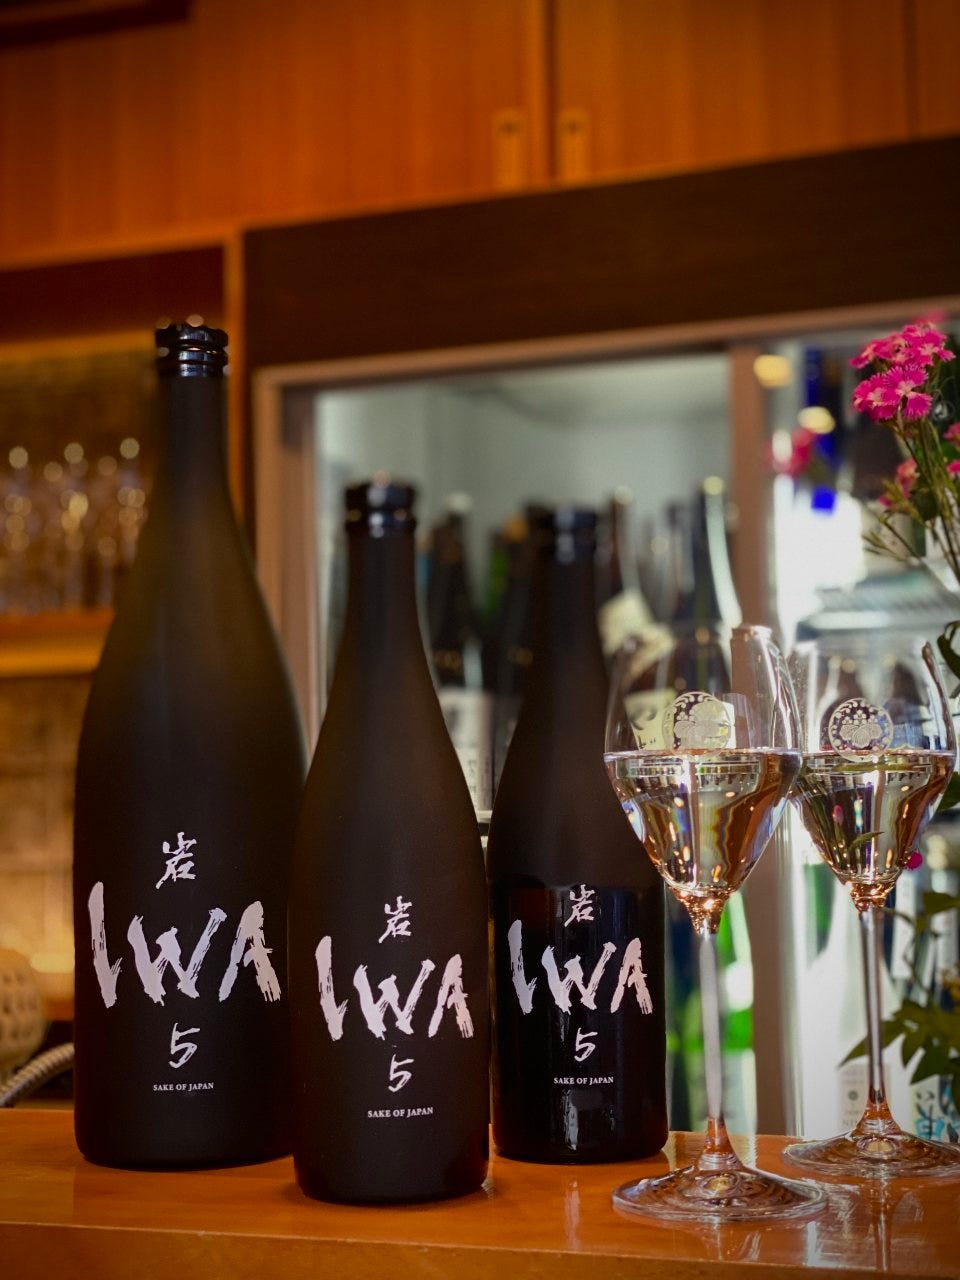 IWA5
ドン ペリニヨンの元醸造責任者が造ったお酒です。